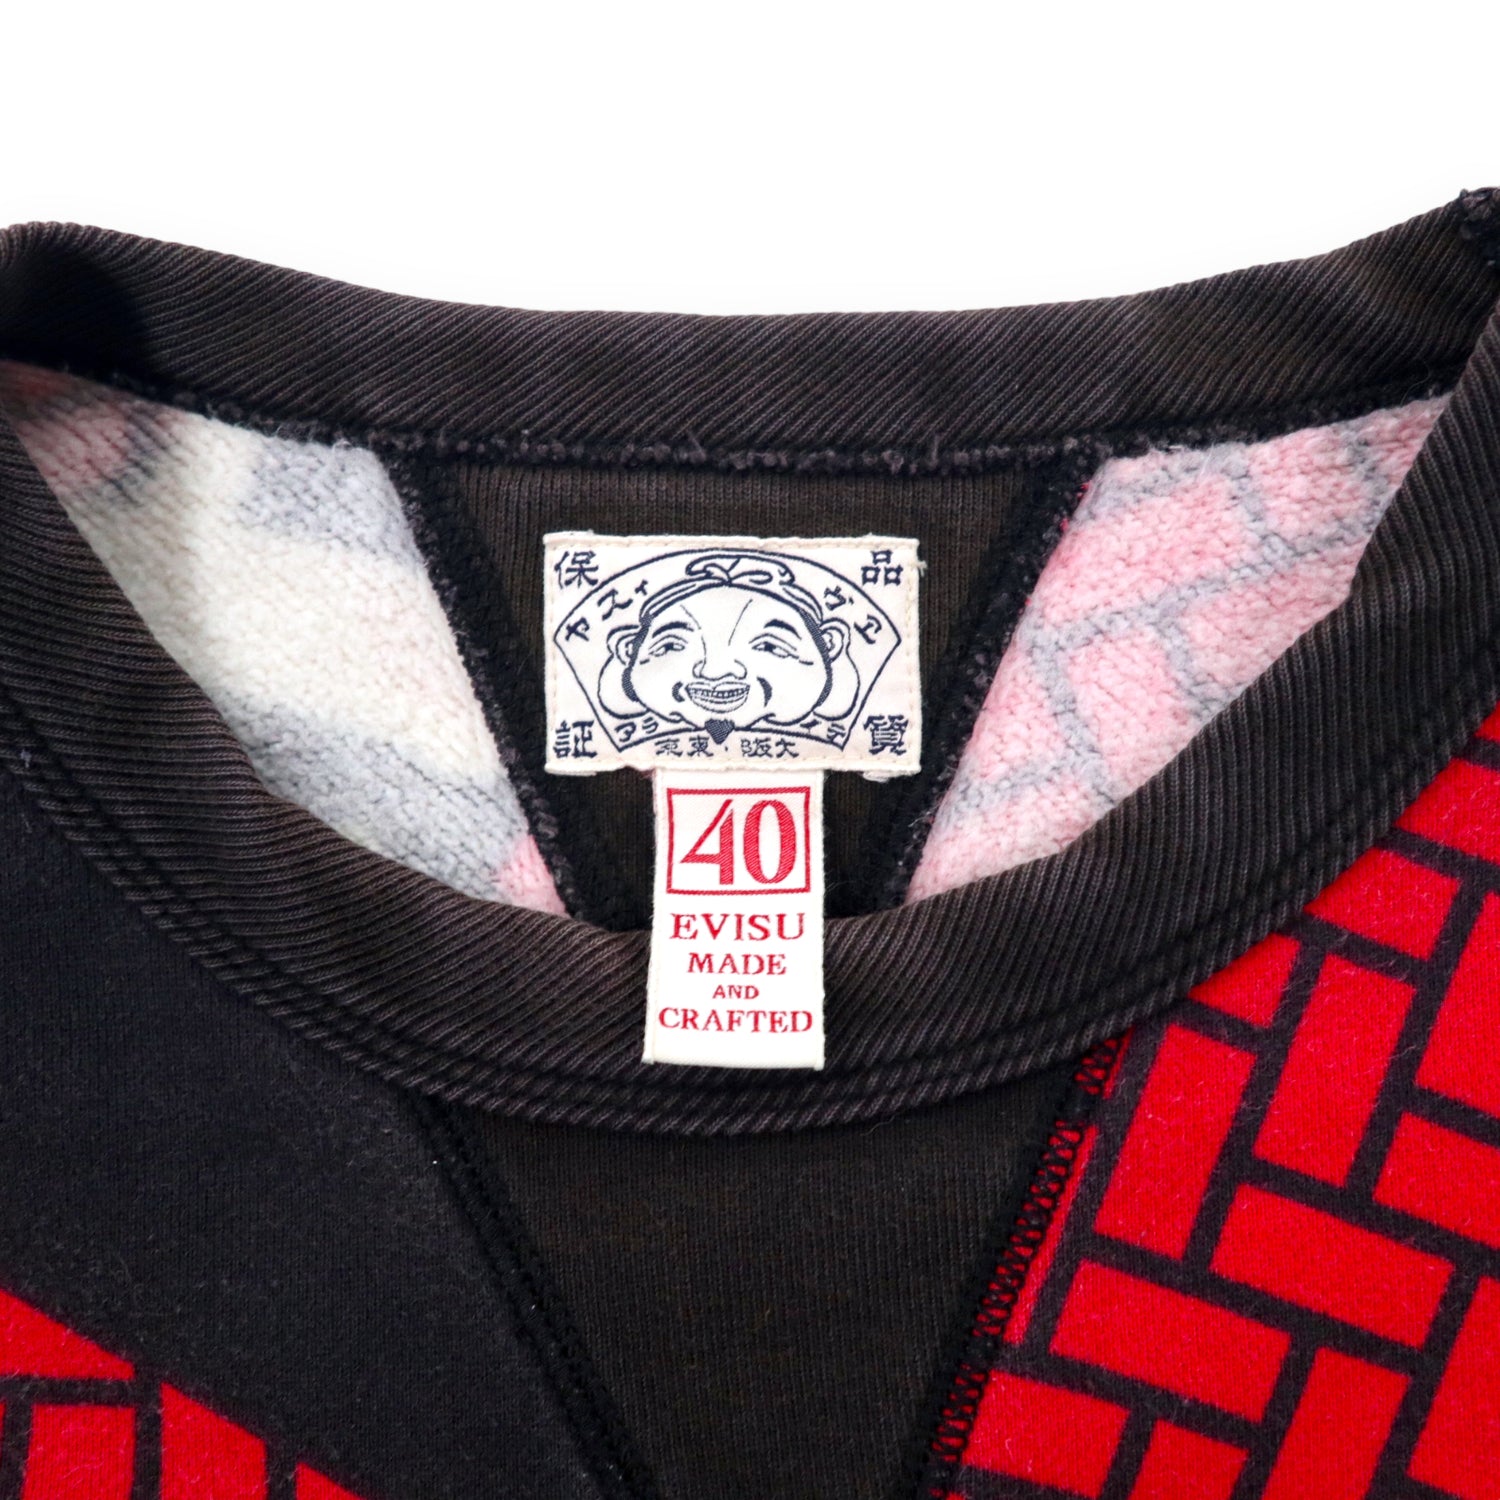 Evisu Patterned Sweatshirt 40 Black Cotton Campaign 1181 – 日本然